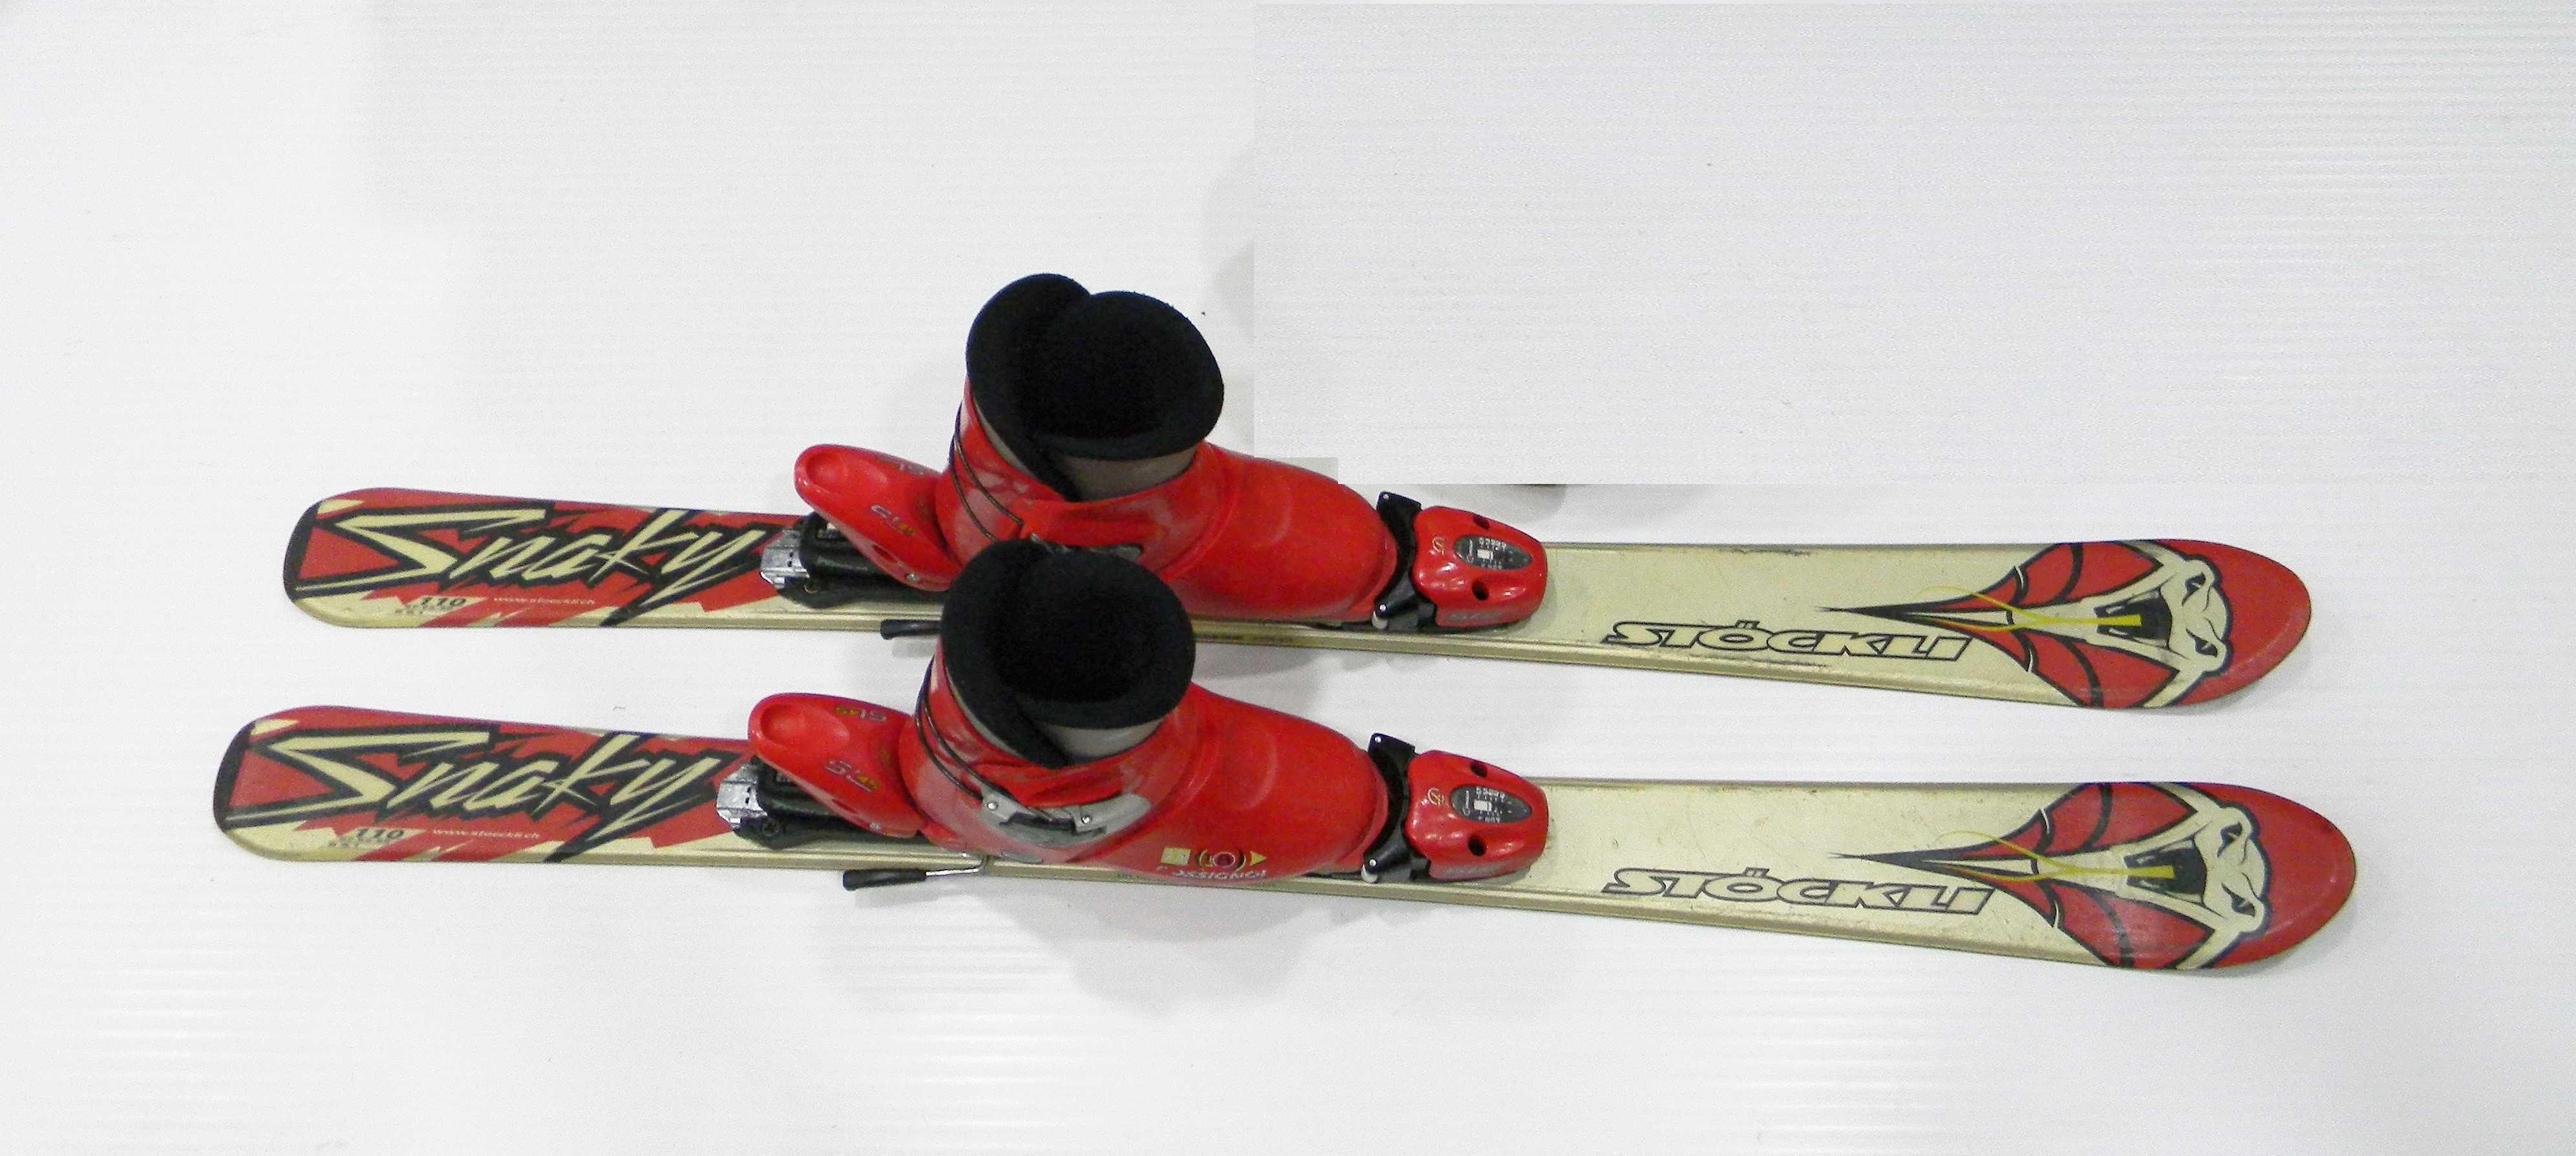 zestaw, narty dla dzieci do nauki Stockli 110cm + buty Rossignol roz32